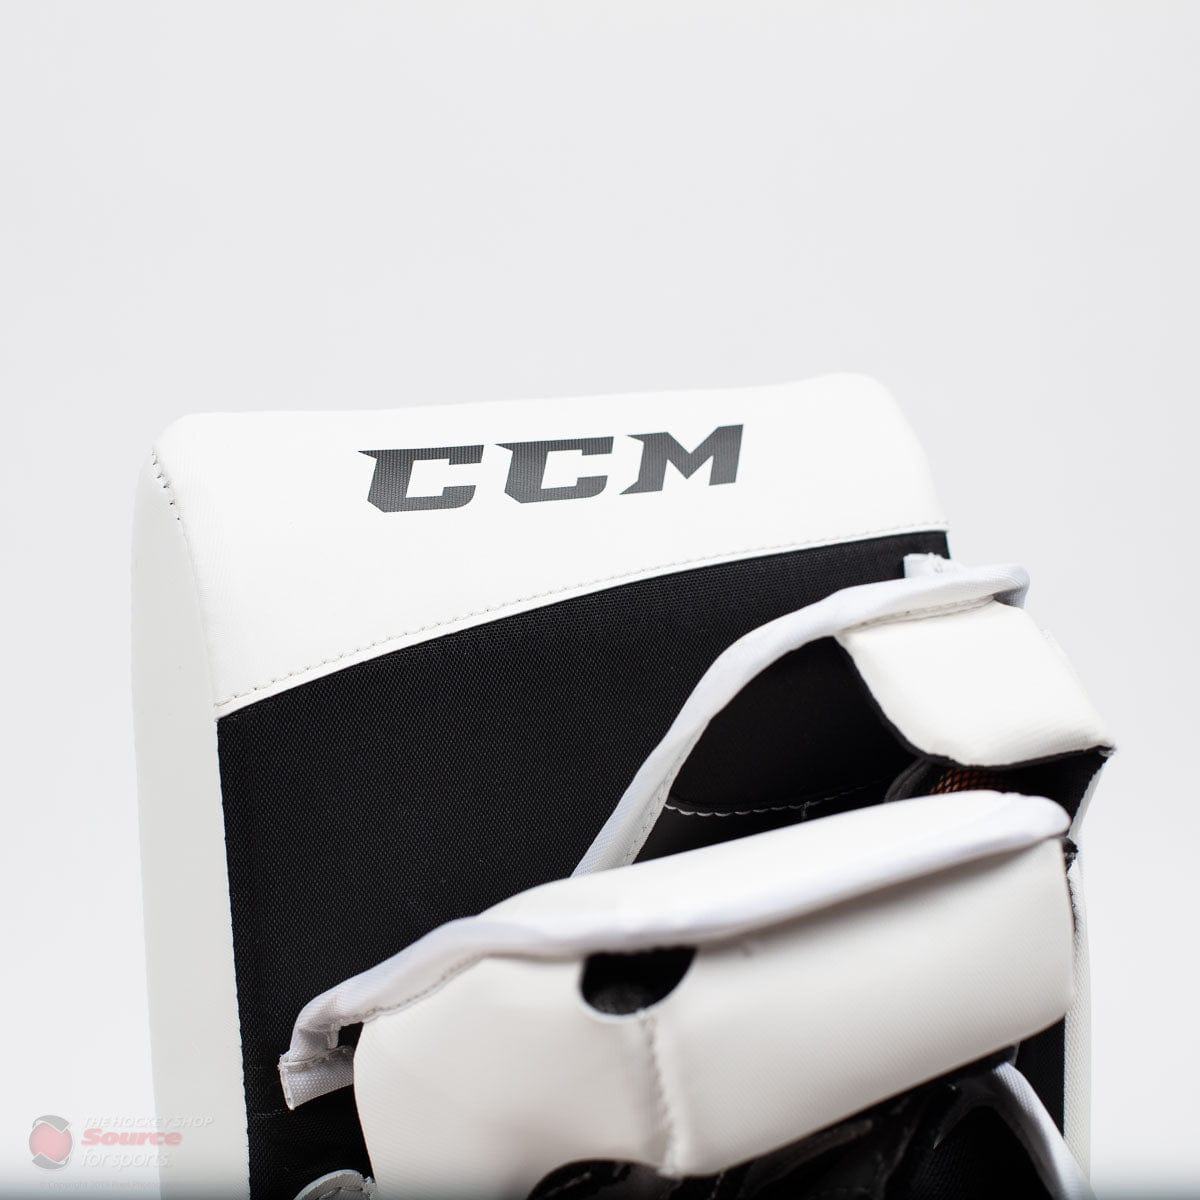 CCM Extreme Flex E4.5 Senior Goalie Blocker - Source Exclusive